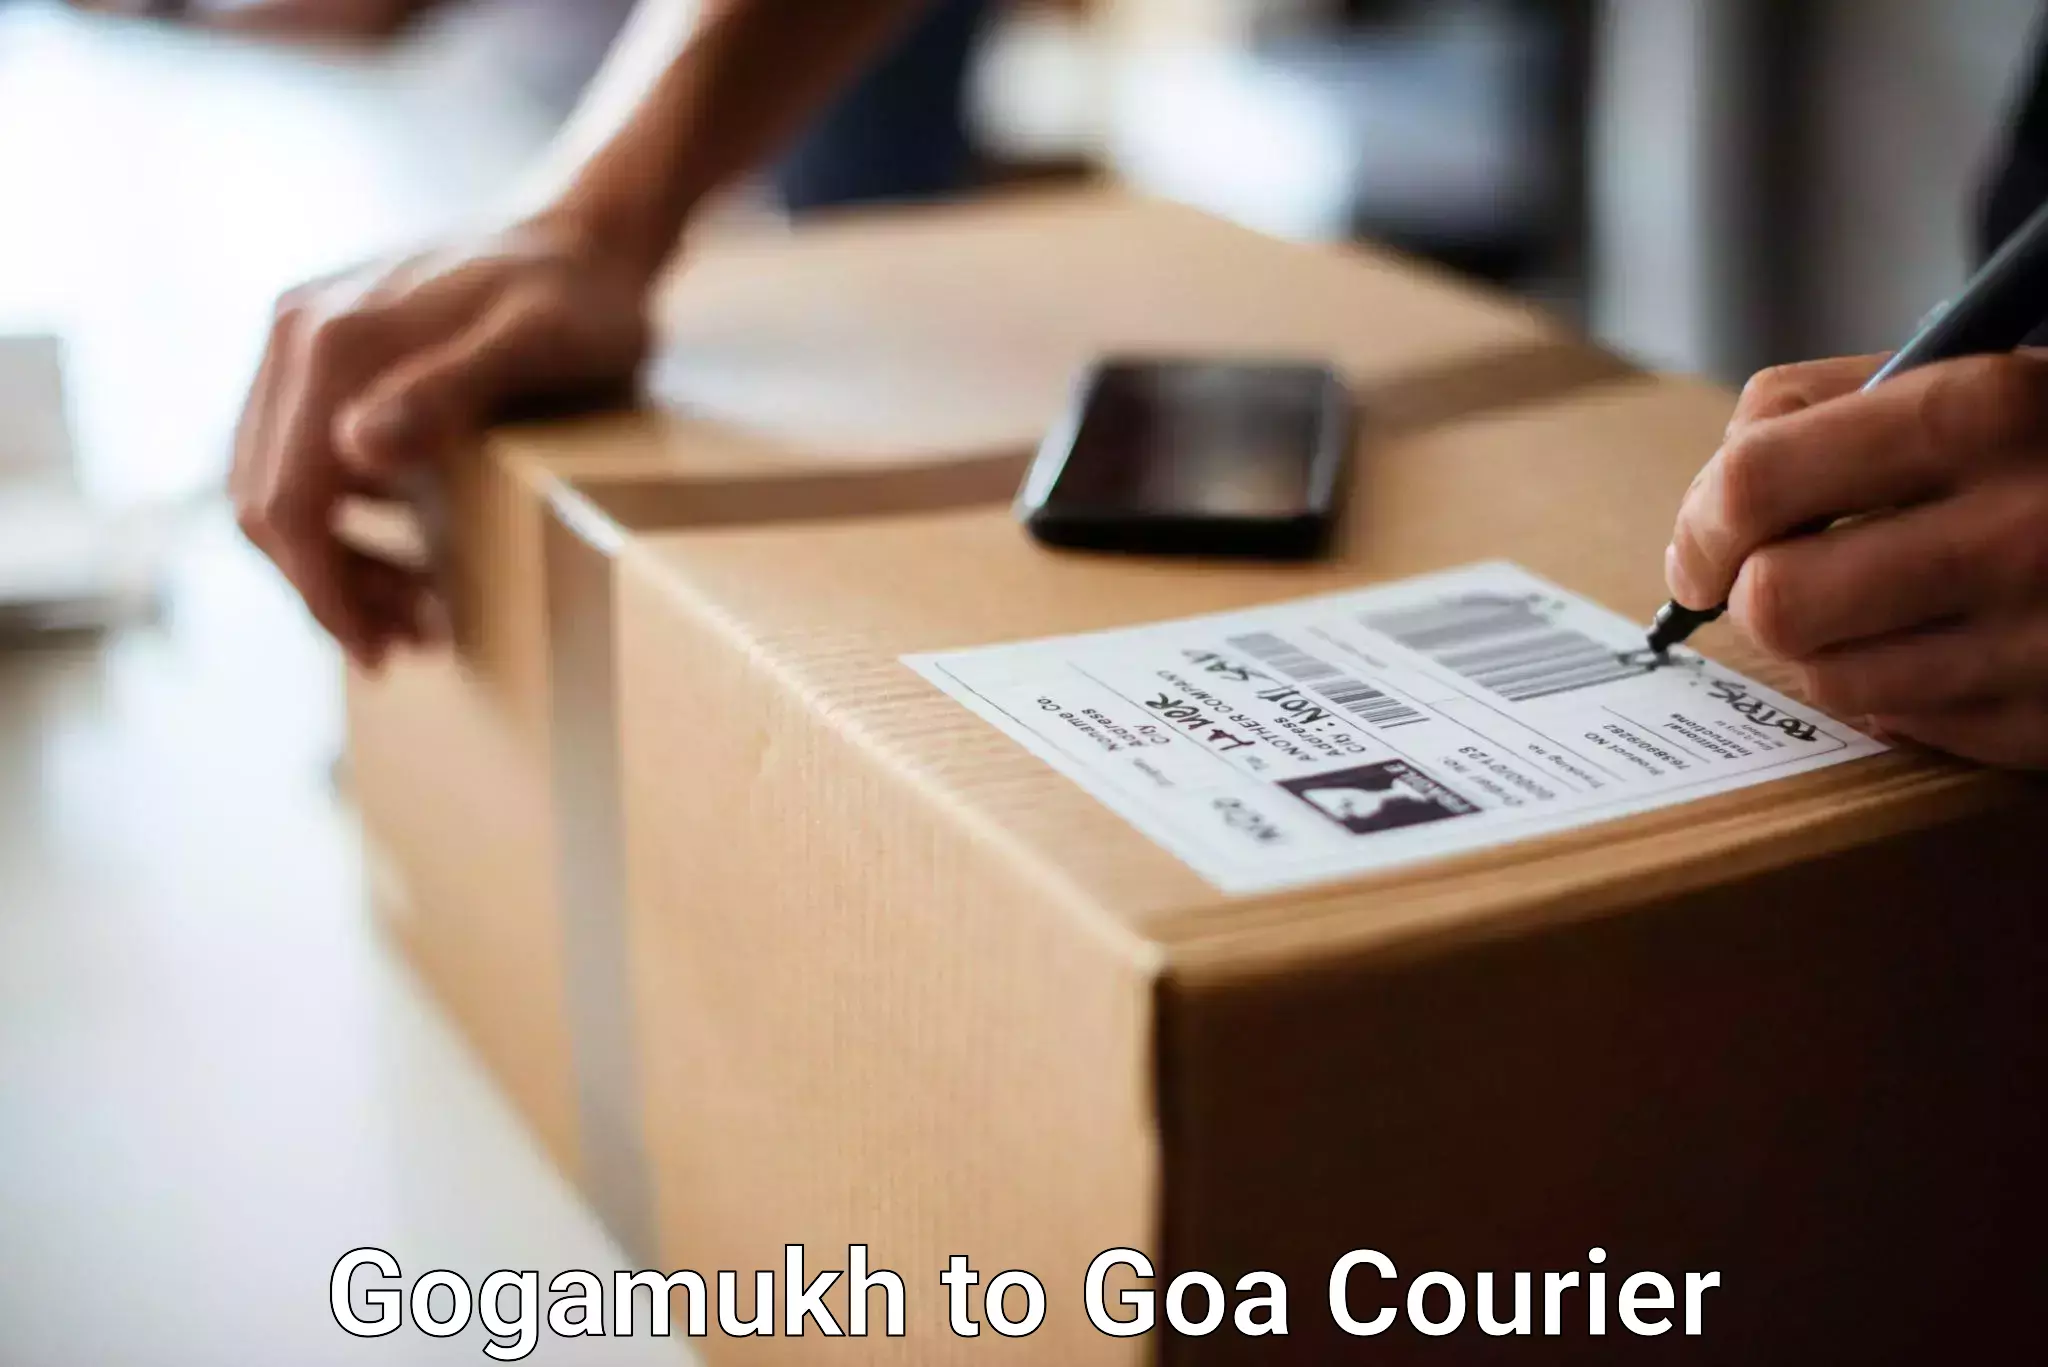 Baggage transport technology Gogamukh to South Goa